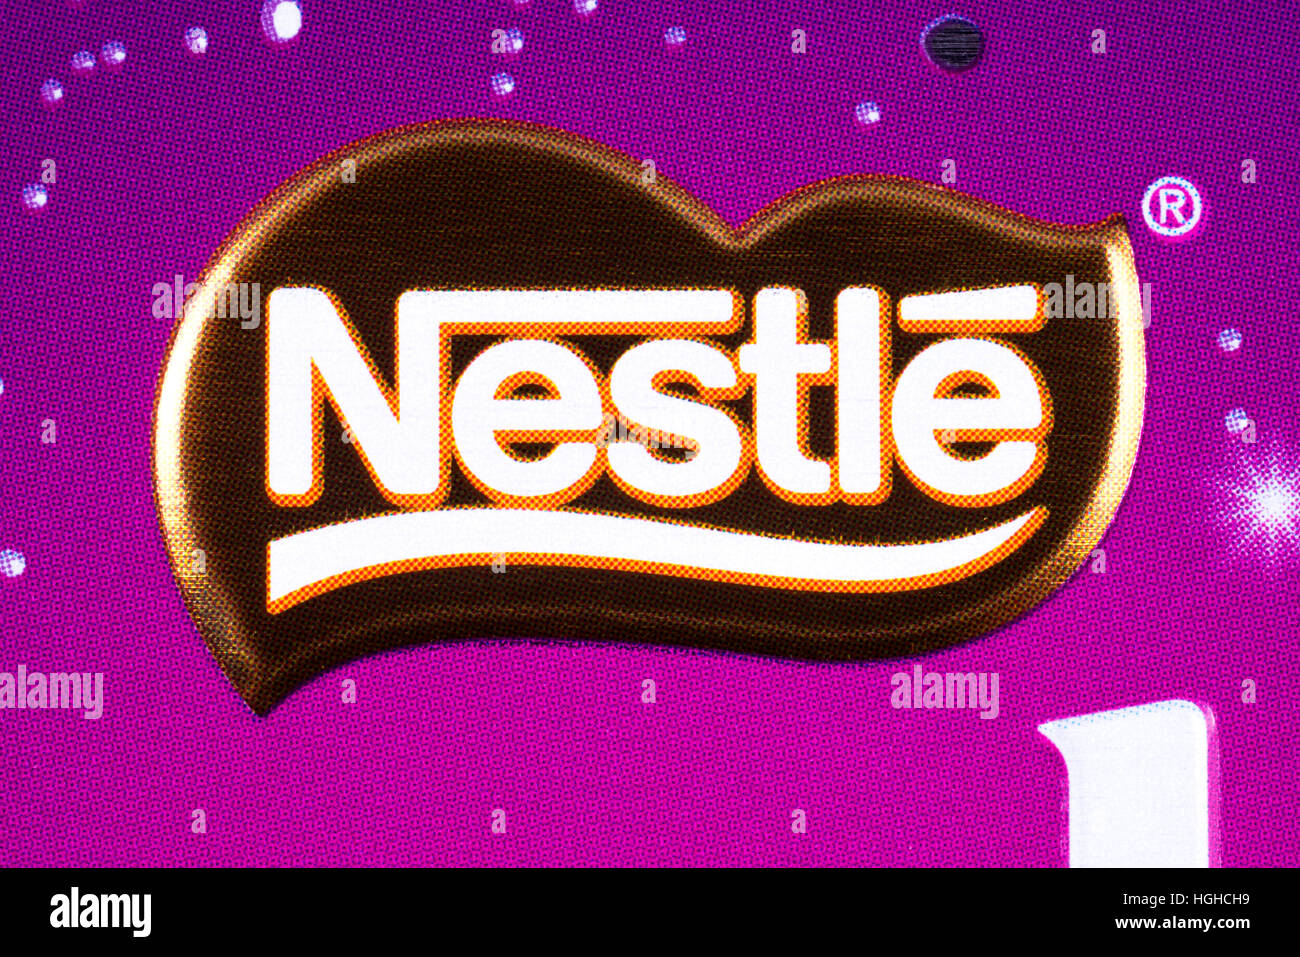 Londres, UK - 4 janvier 2017 : un gros plan de la logo Nestlé sur l'un de leurs produits de confiserie. Banque D'Images